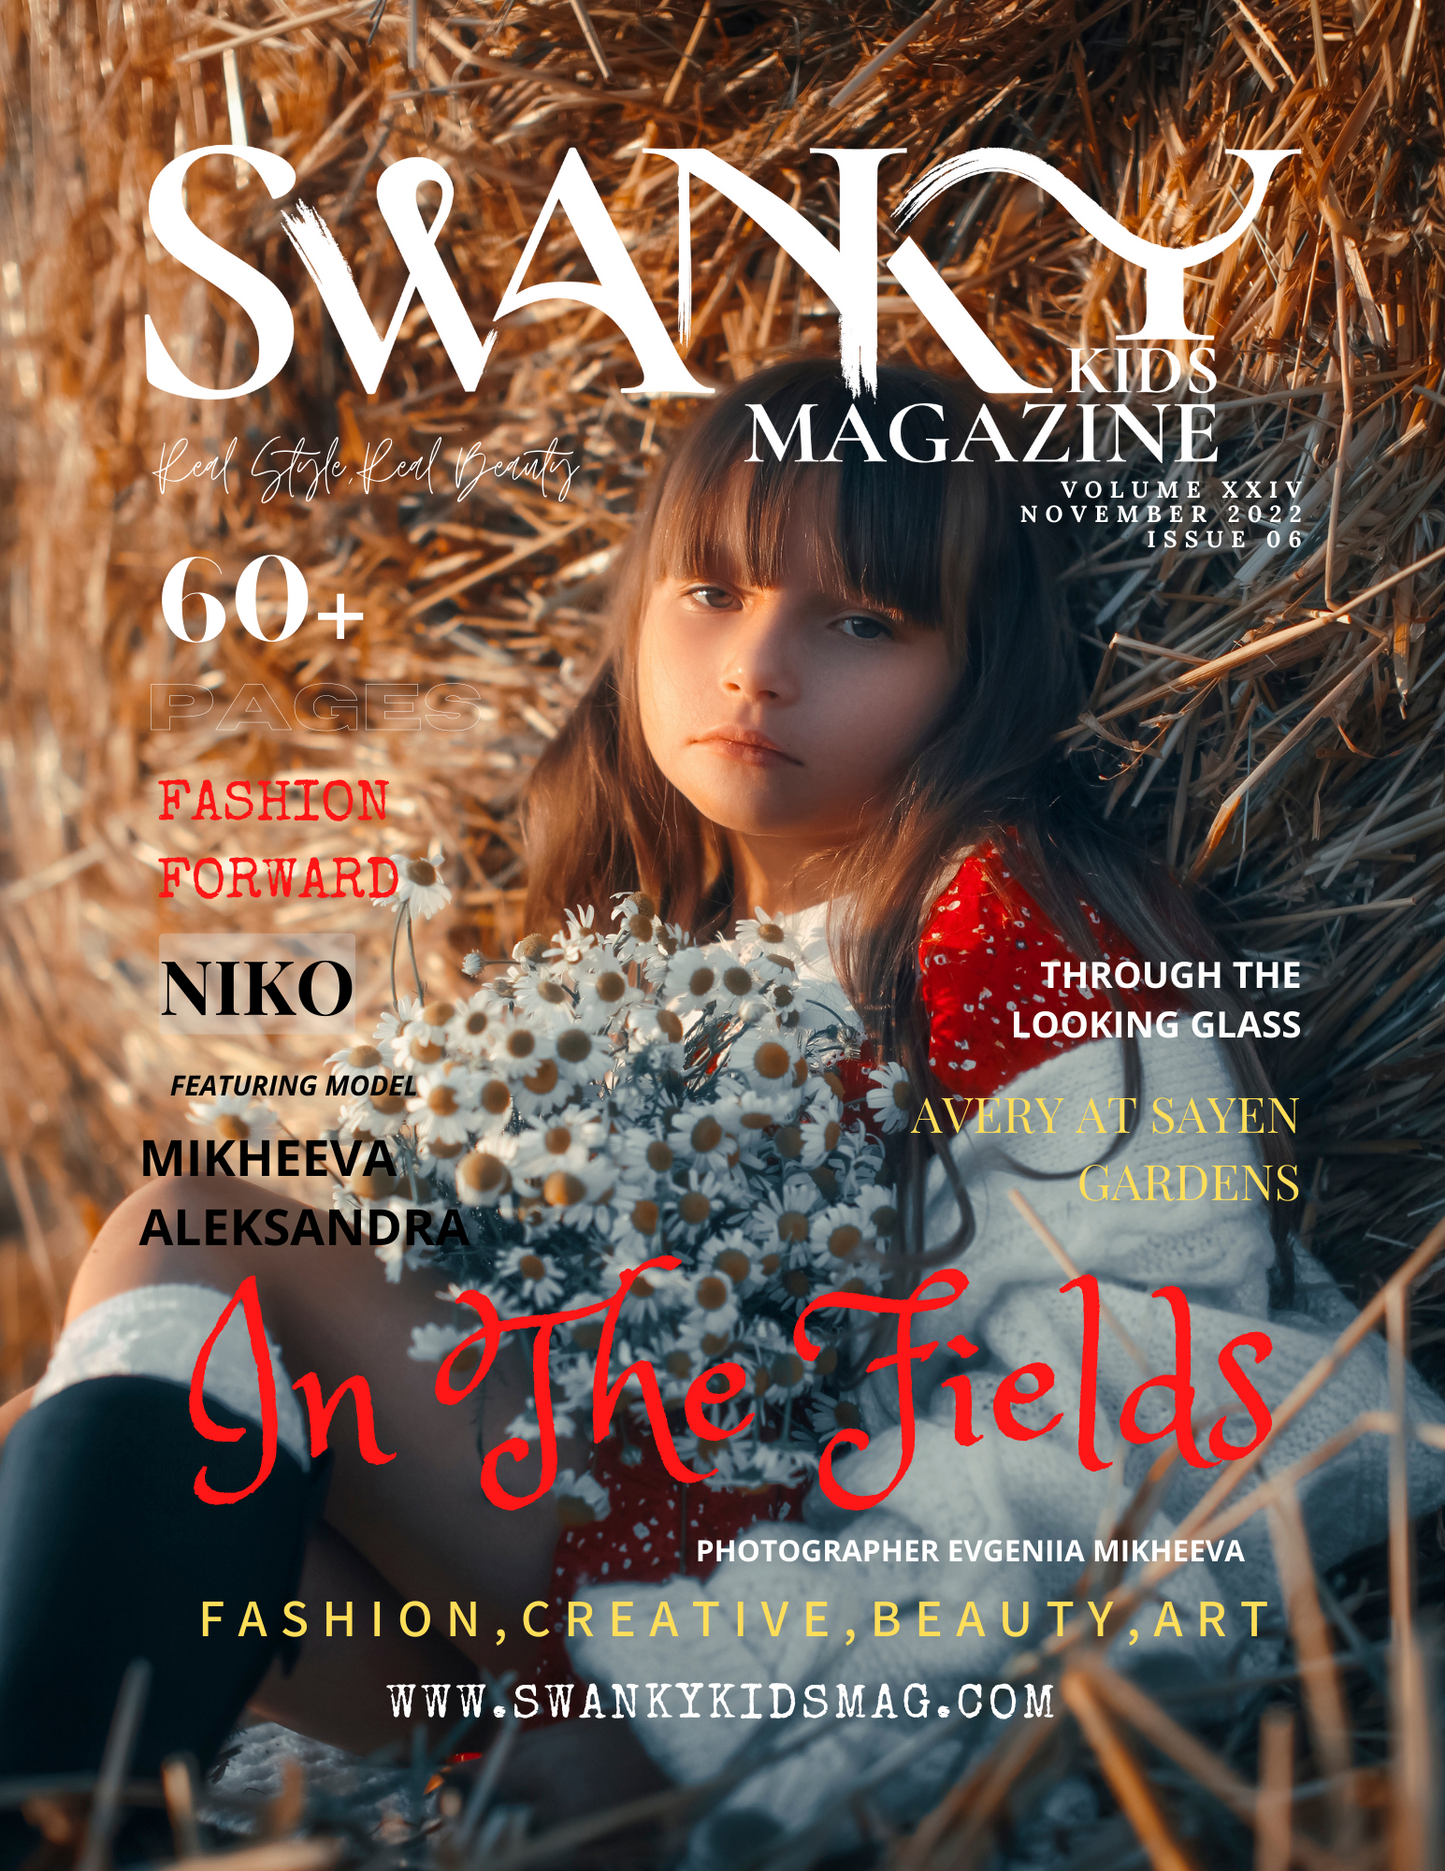 Swanky Kids Magazine November 2022 VOL XXIV Issue 06